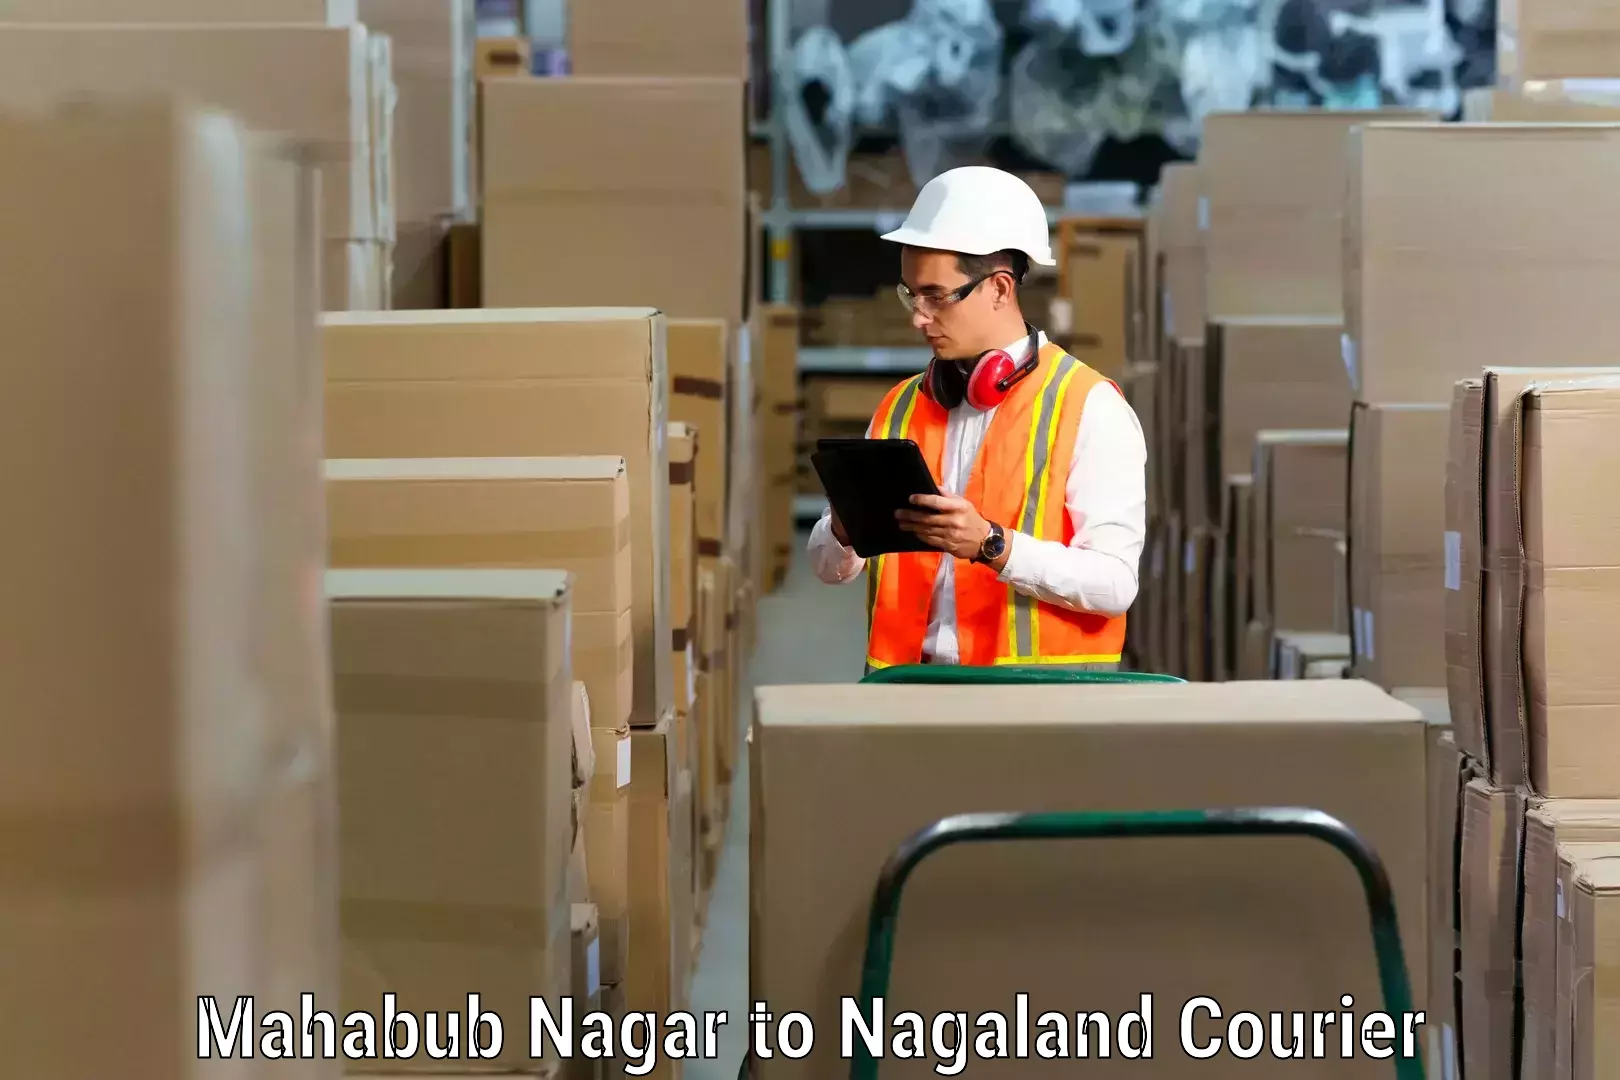 Furniture moving solutions Mahabub Nagar to Nagaland